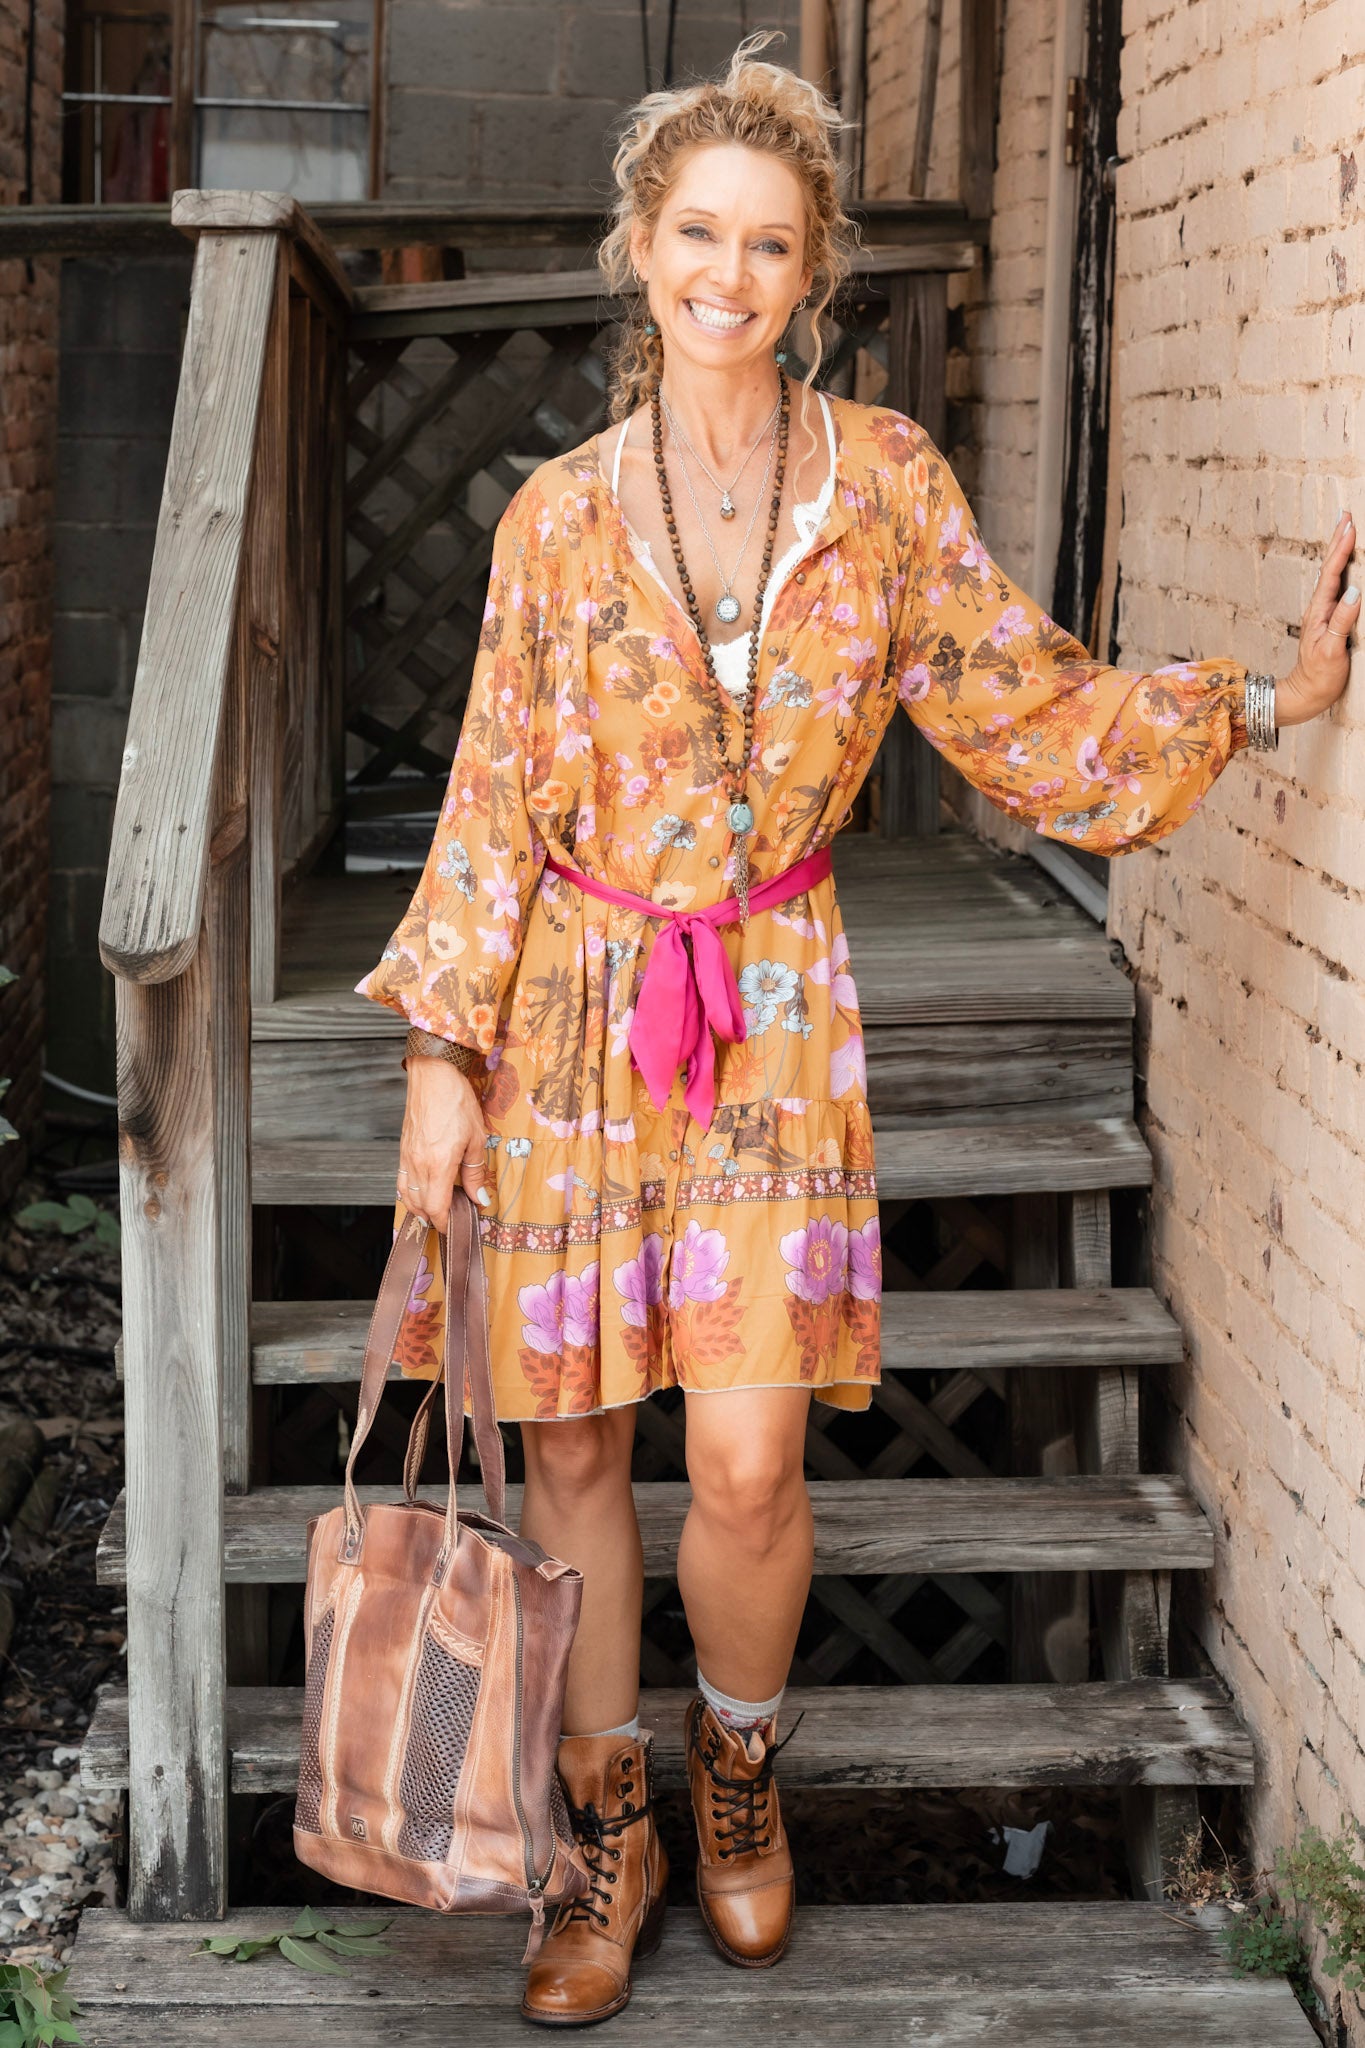 Zoe Dress in Mustard Floral - SpiritedBoutiques Boho Hippie Boutique Style Dress, Aratta